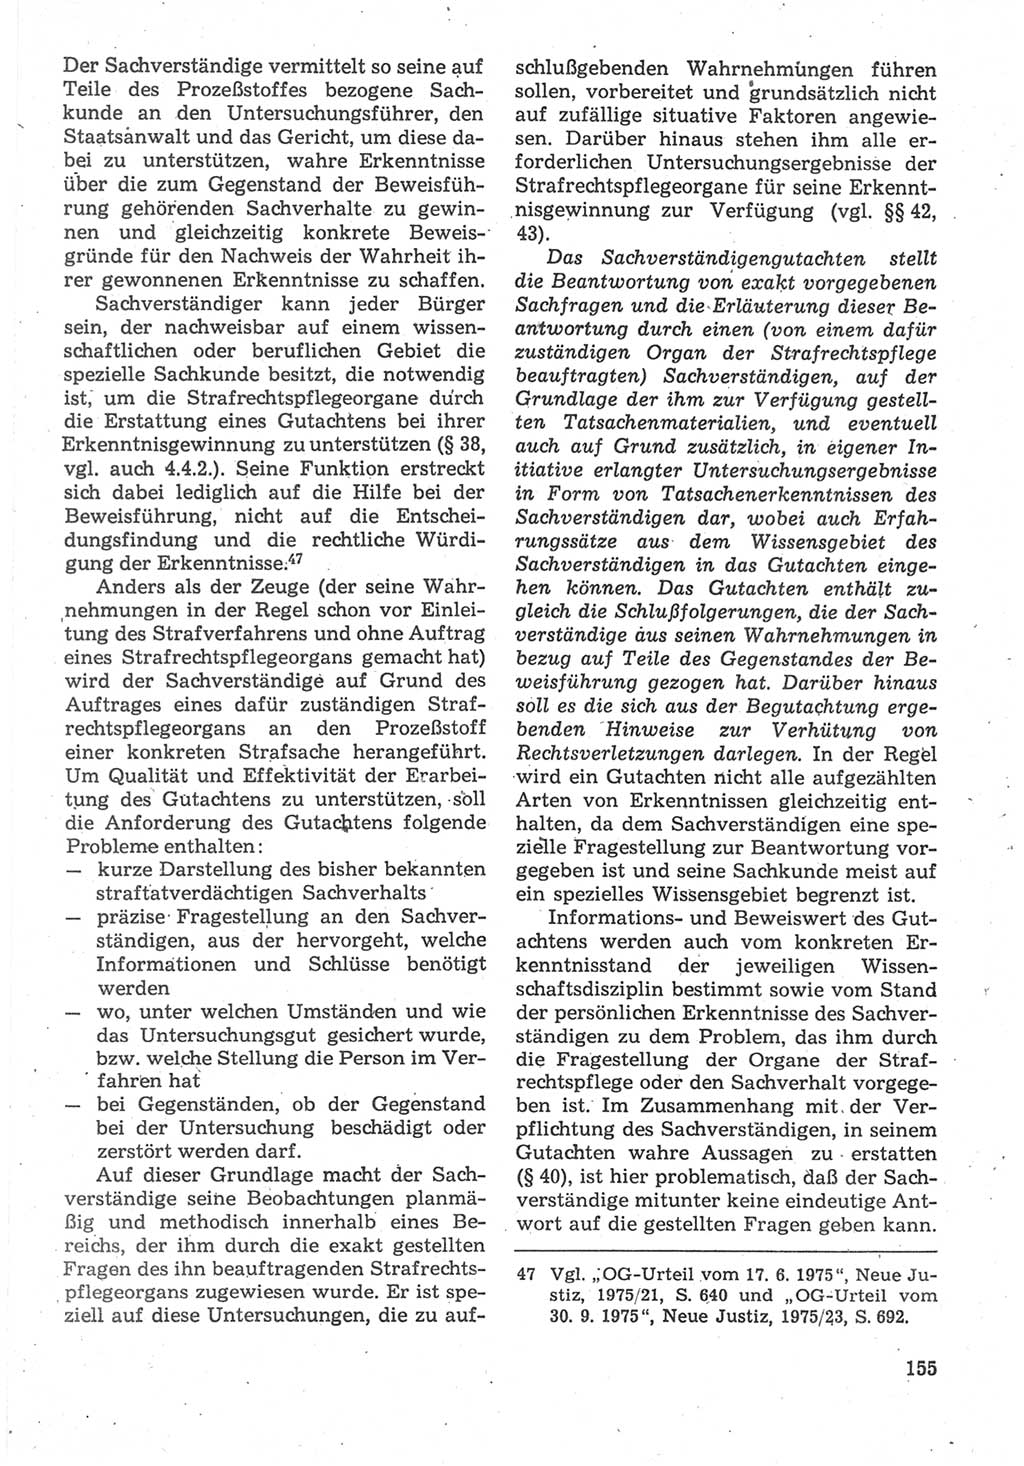 Strafverfahrensrecht [Deutsche Demokratische Republik (DDR)], Lehrbuch 1987, Seite 155 (Strafverf.-R. DDR Lb. 1987, S. 155)